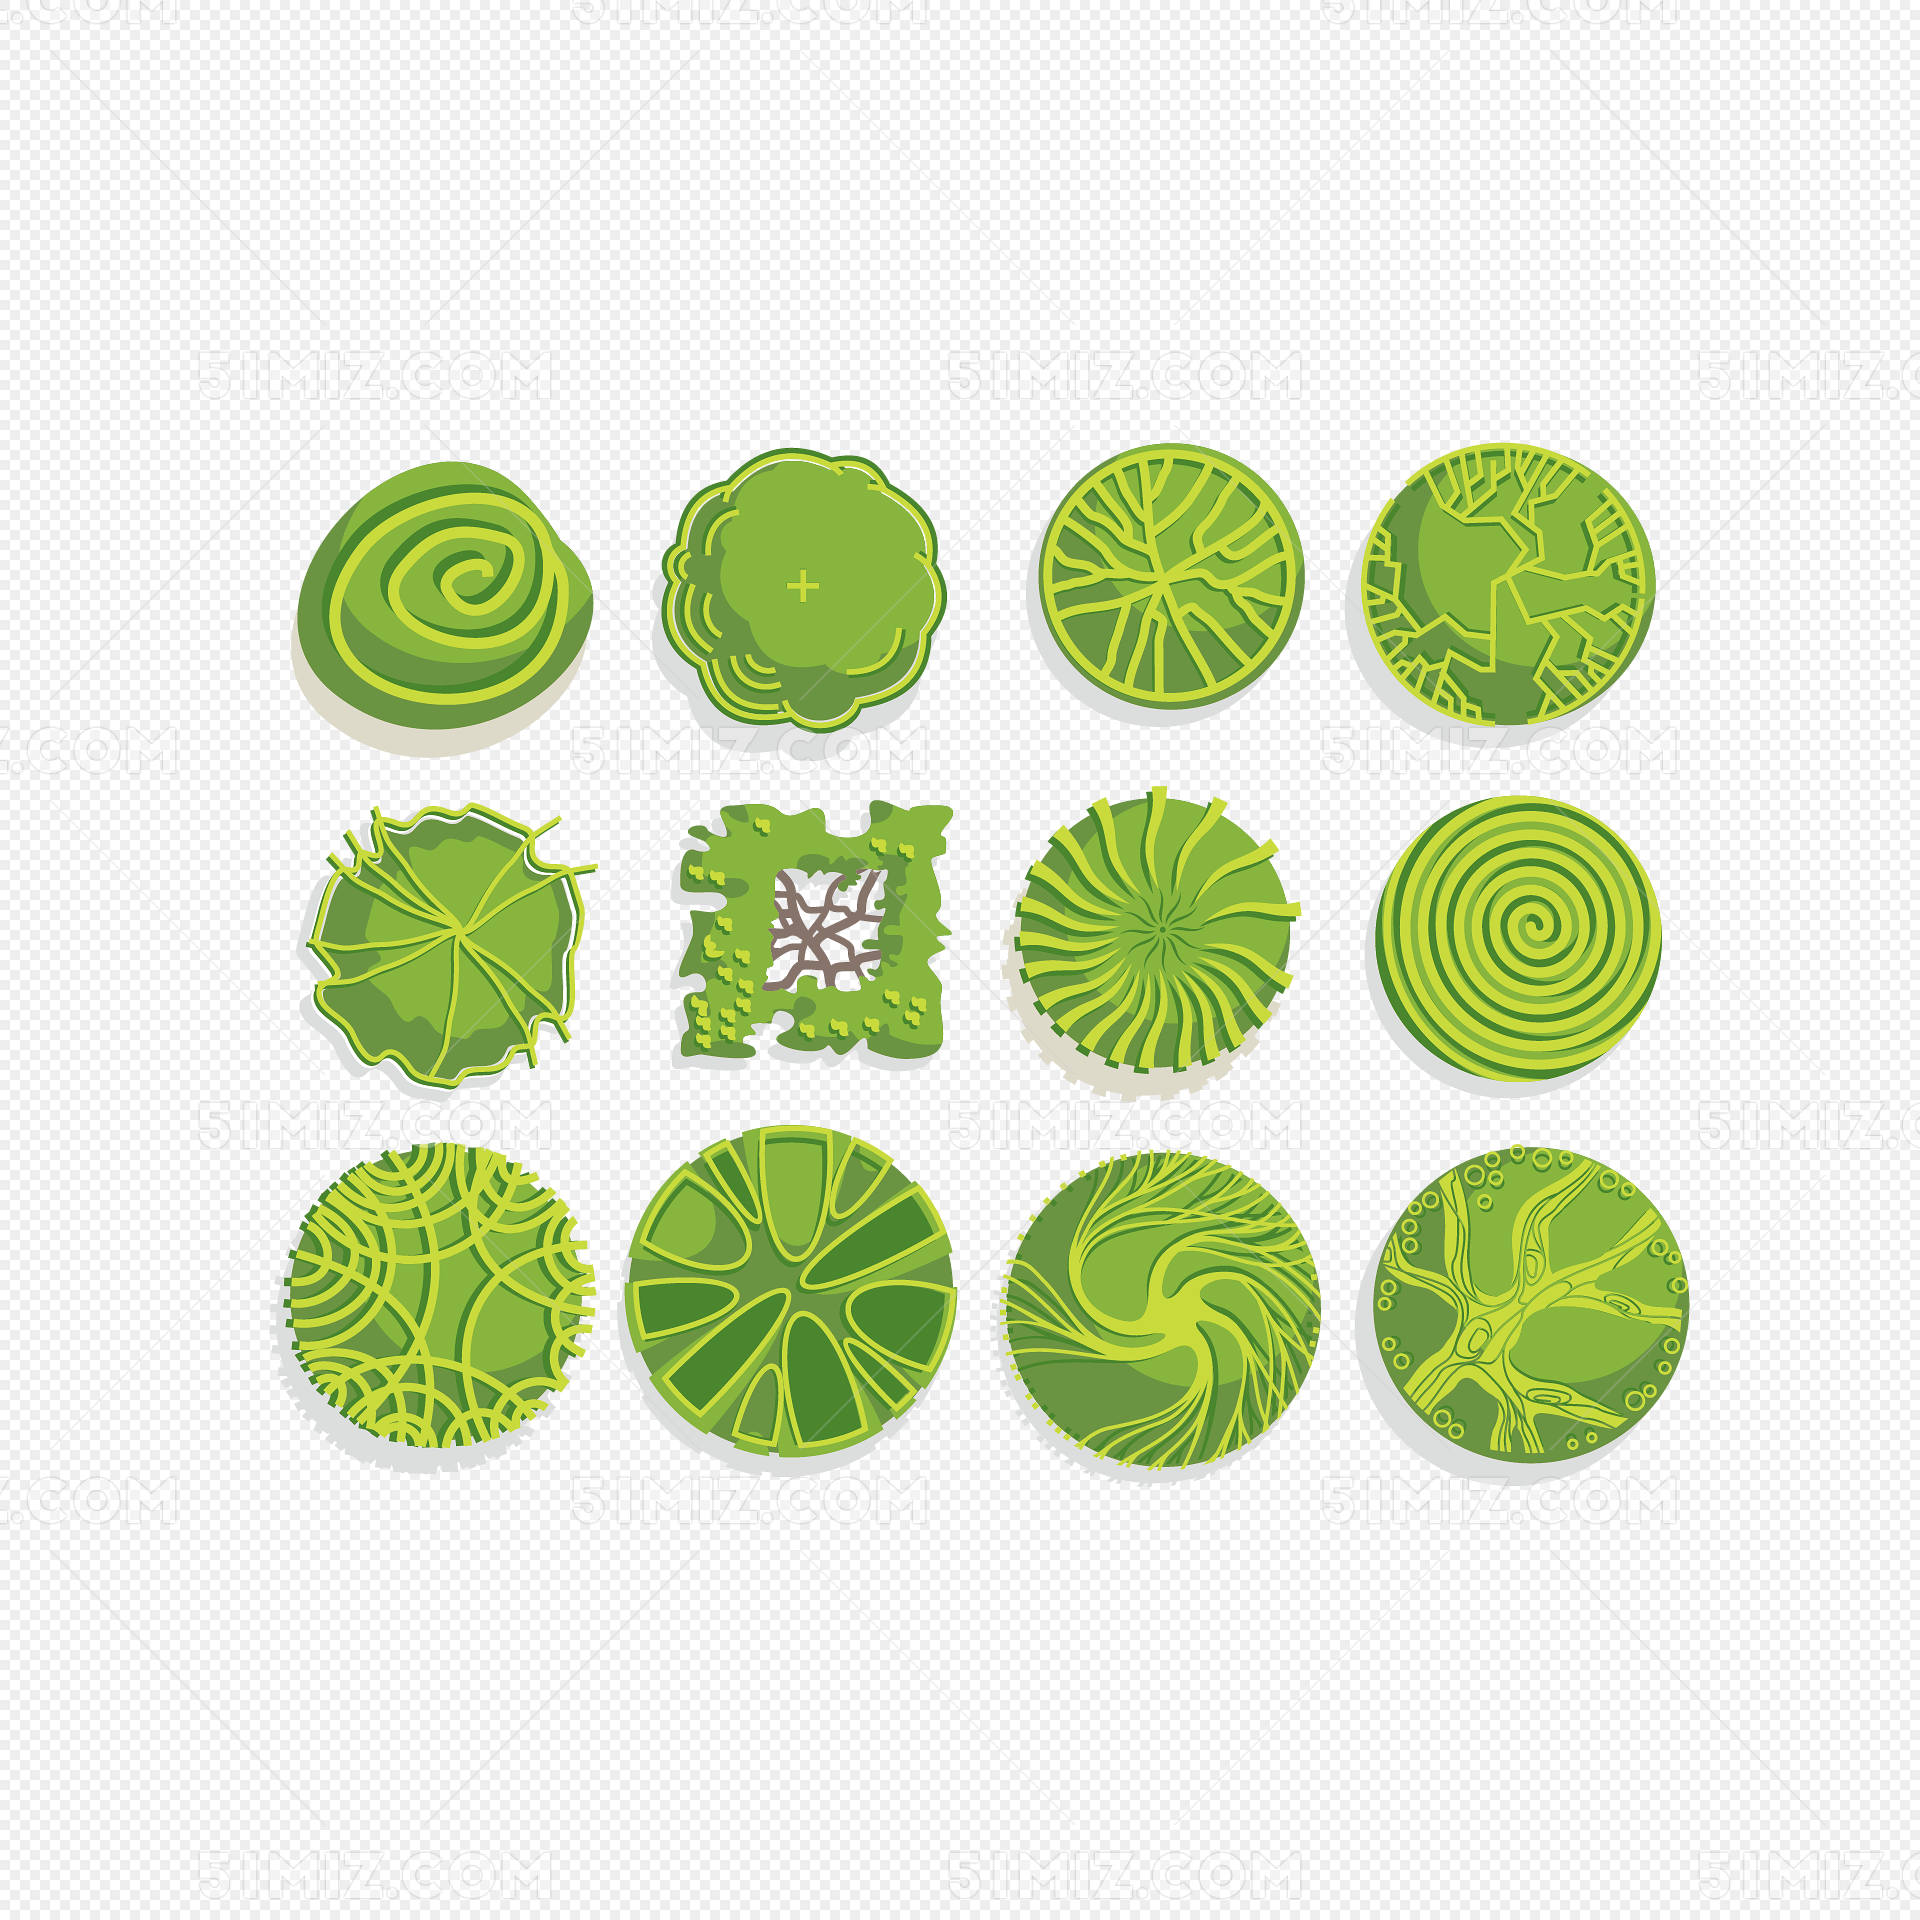 【1600x900】绿树绿水桌面壁纸 - 彼岸桌面